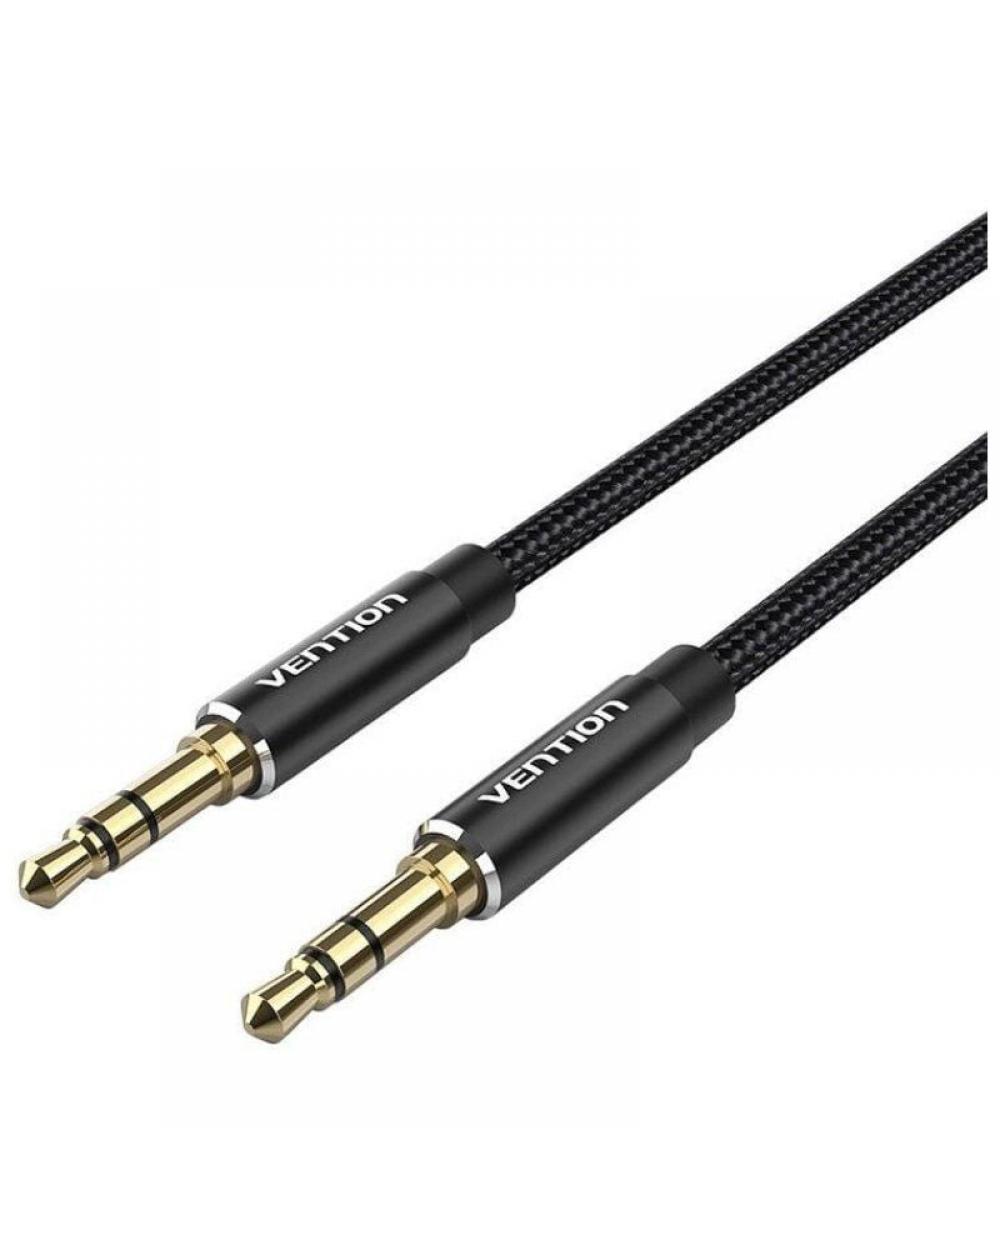 Cable Estéreo Vention BAWBI/ Jack 3.5 Macho - Jack 3.5 Macho/ 3m/ Negro